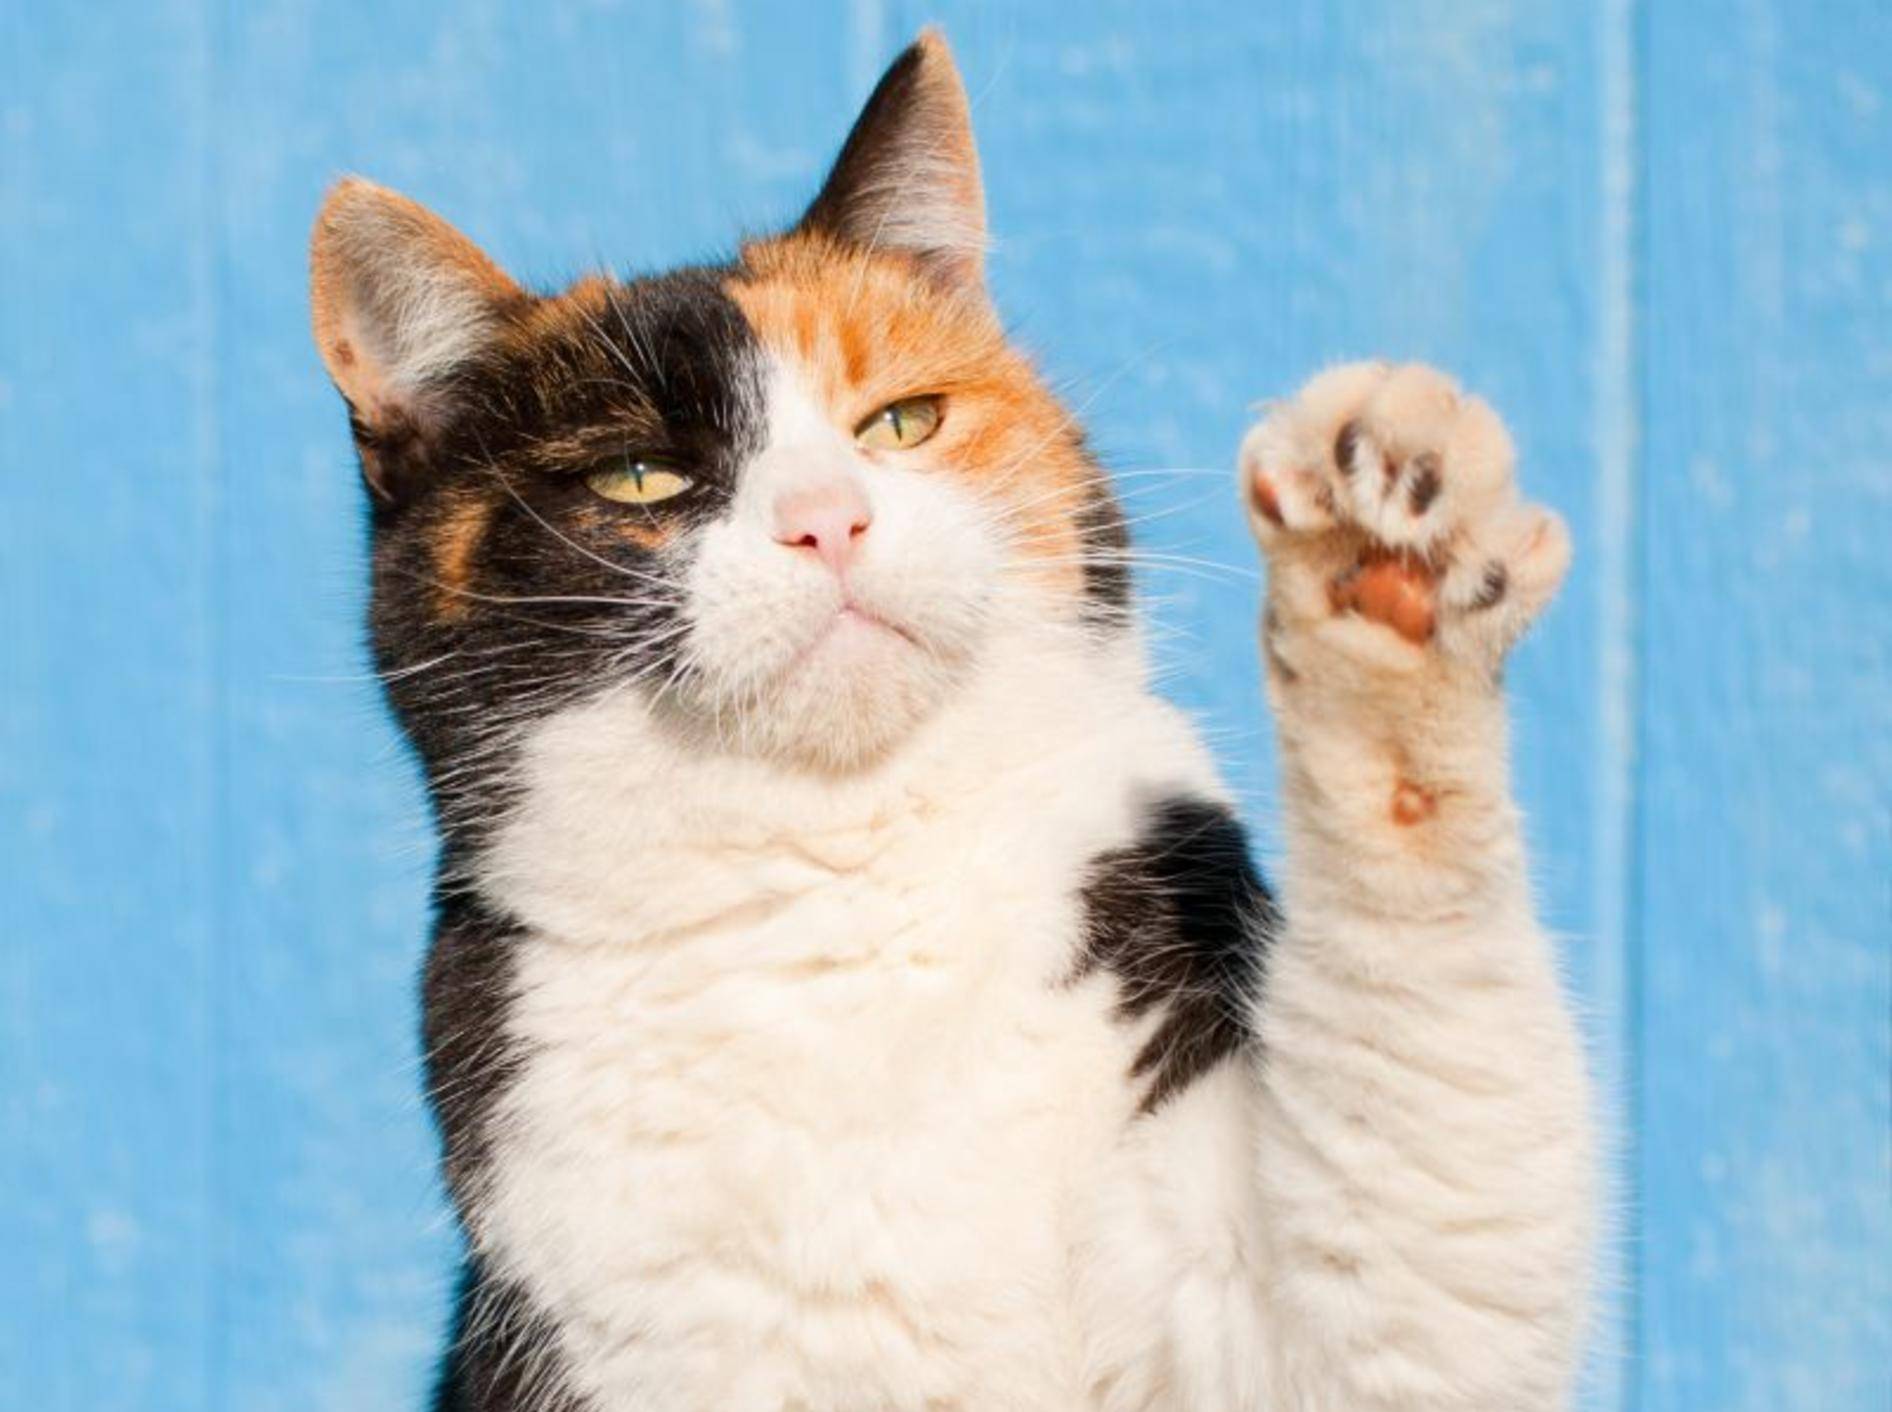 Süße High-Five-Compilation mit Katzen — Bild: Shutterstock / Sari ONeal